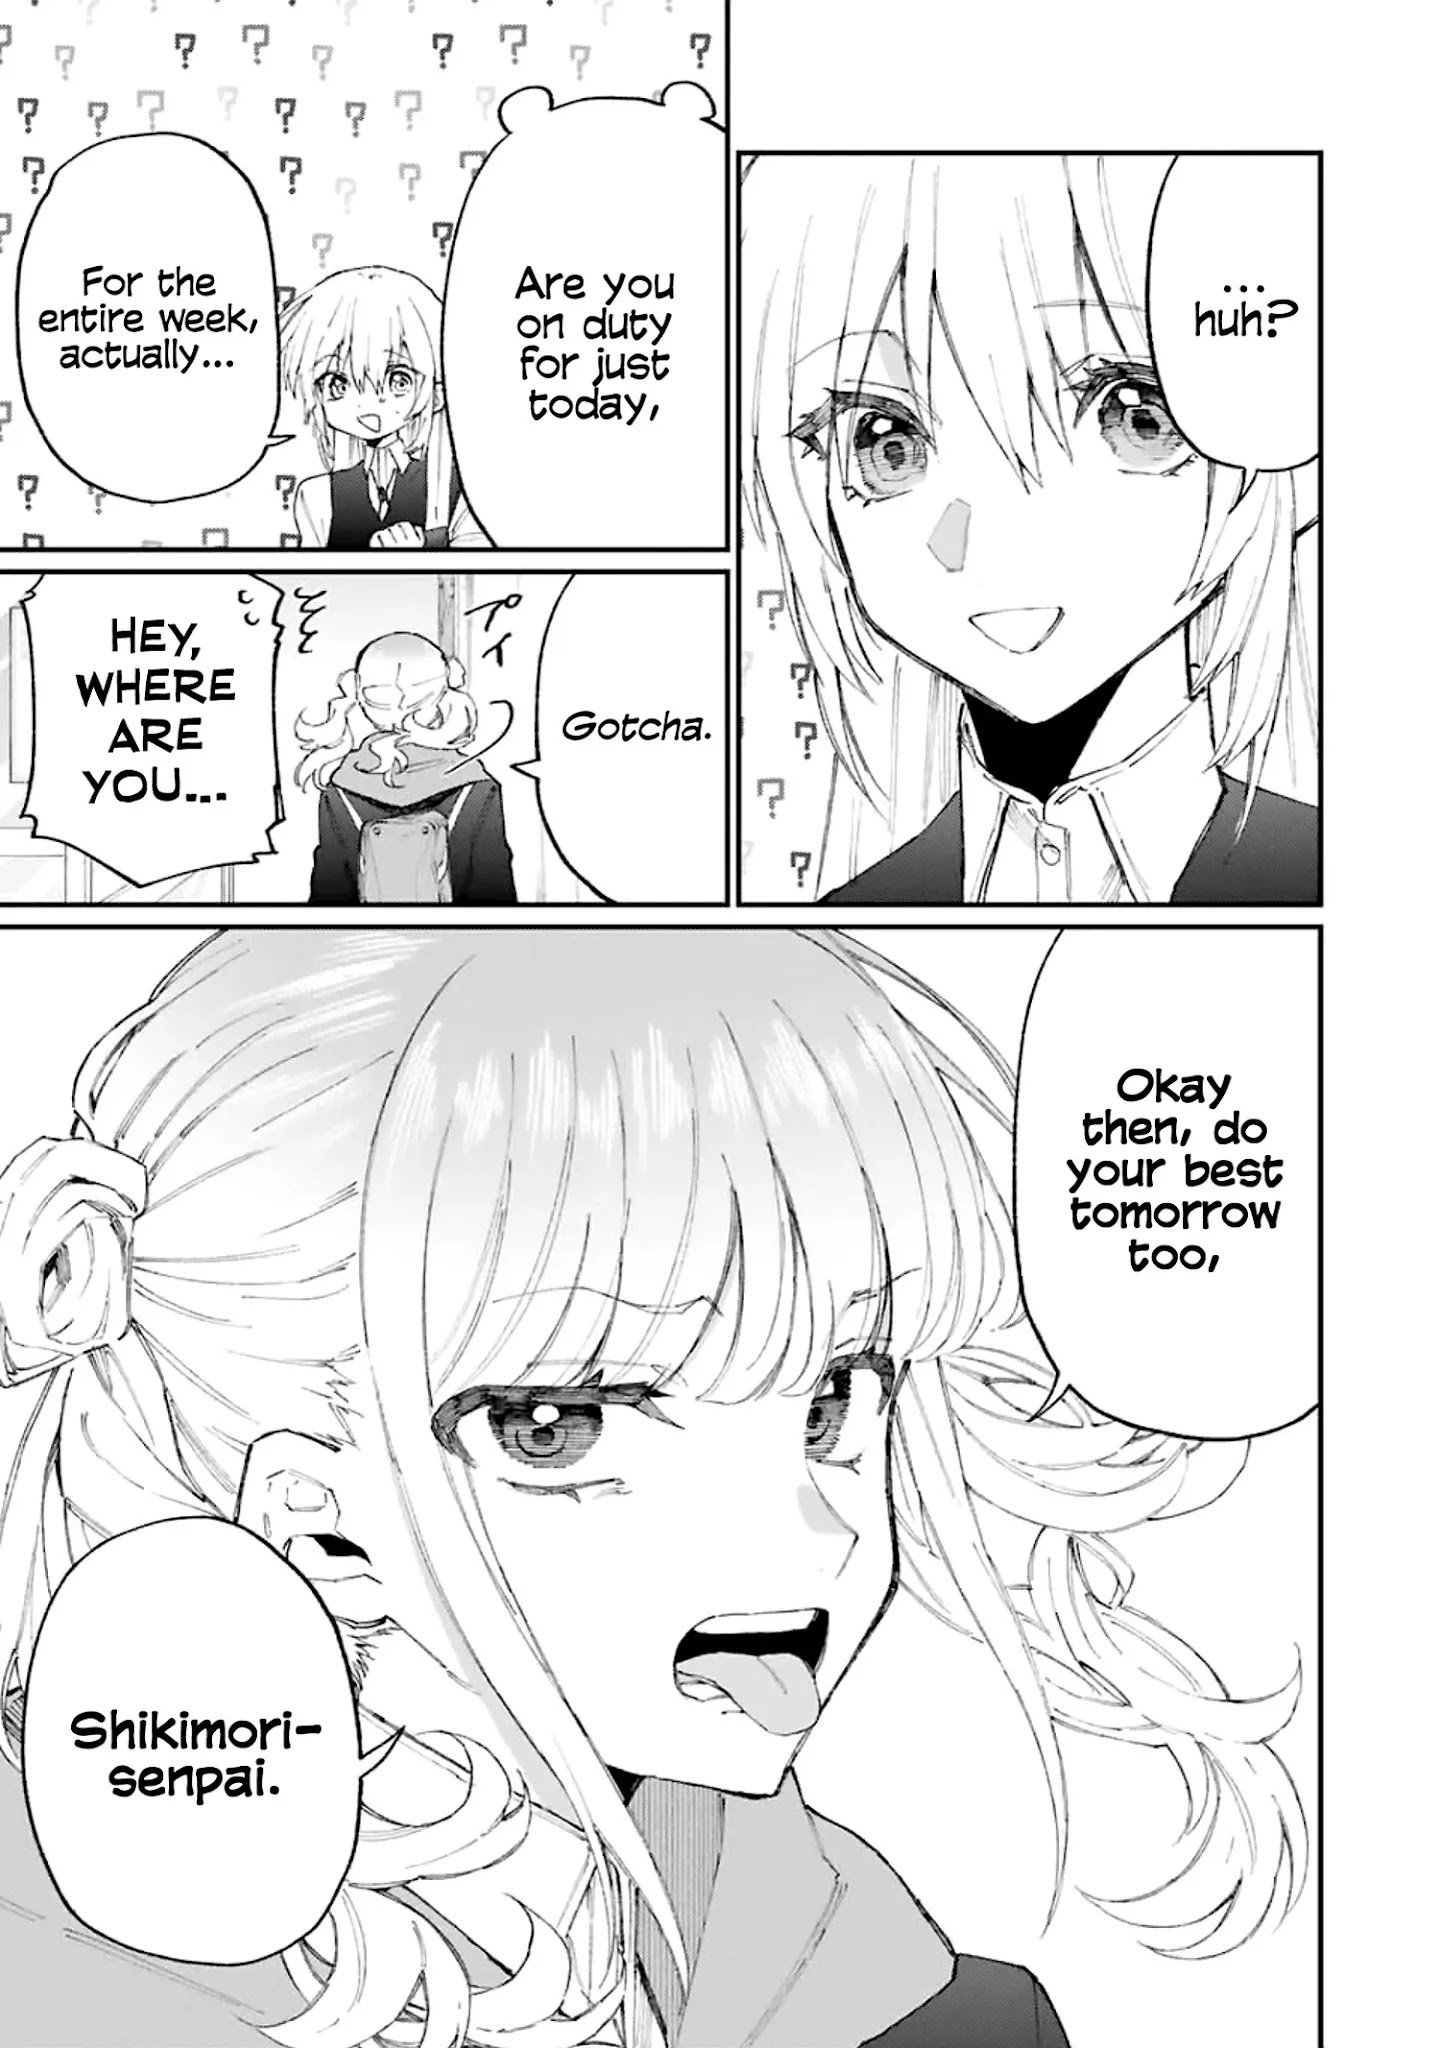 Shikimori's Not Just A Cutie - chapter 123 - #6